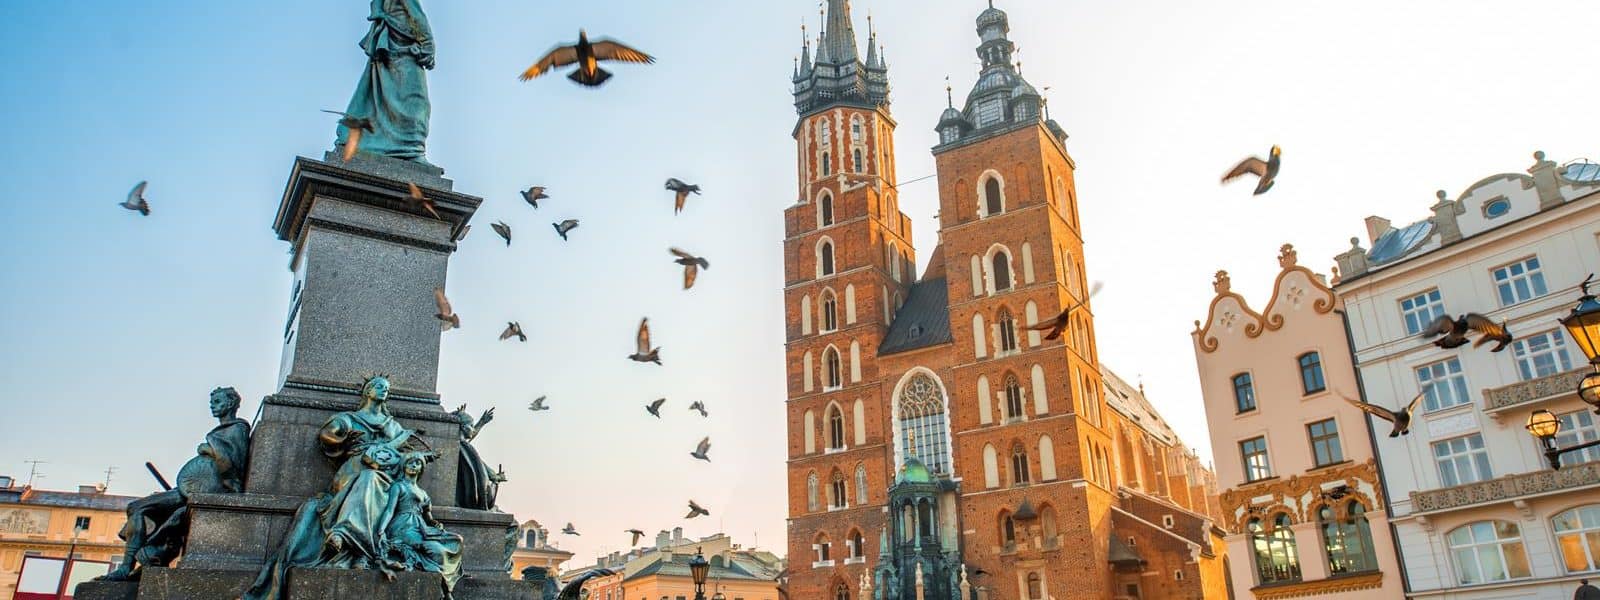 Zwiedzanie Starego Miasta w Krakowie